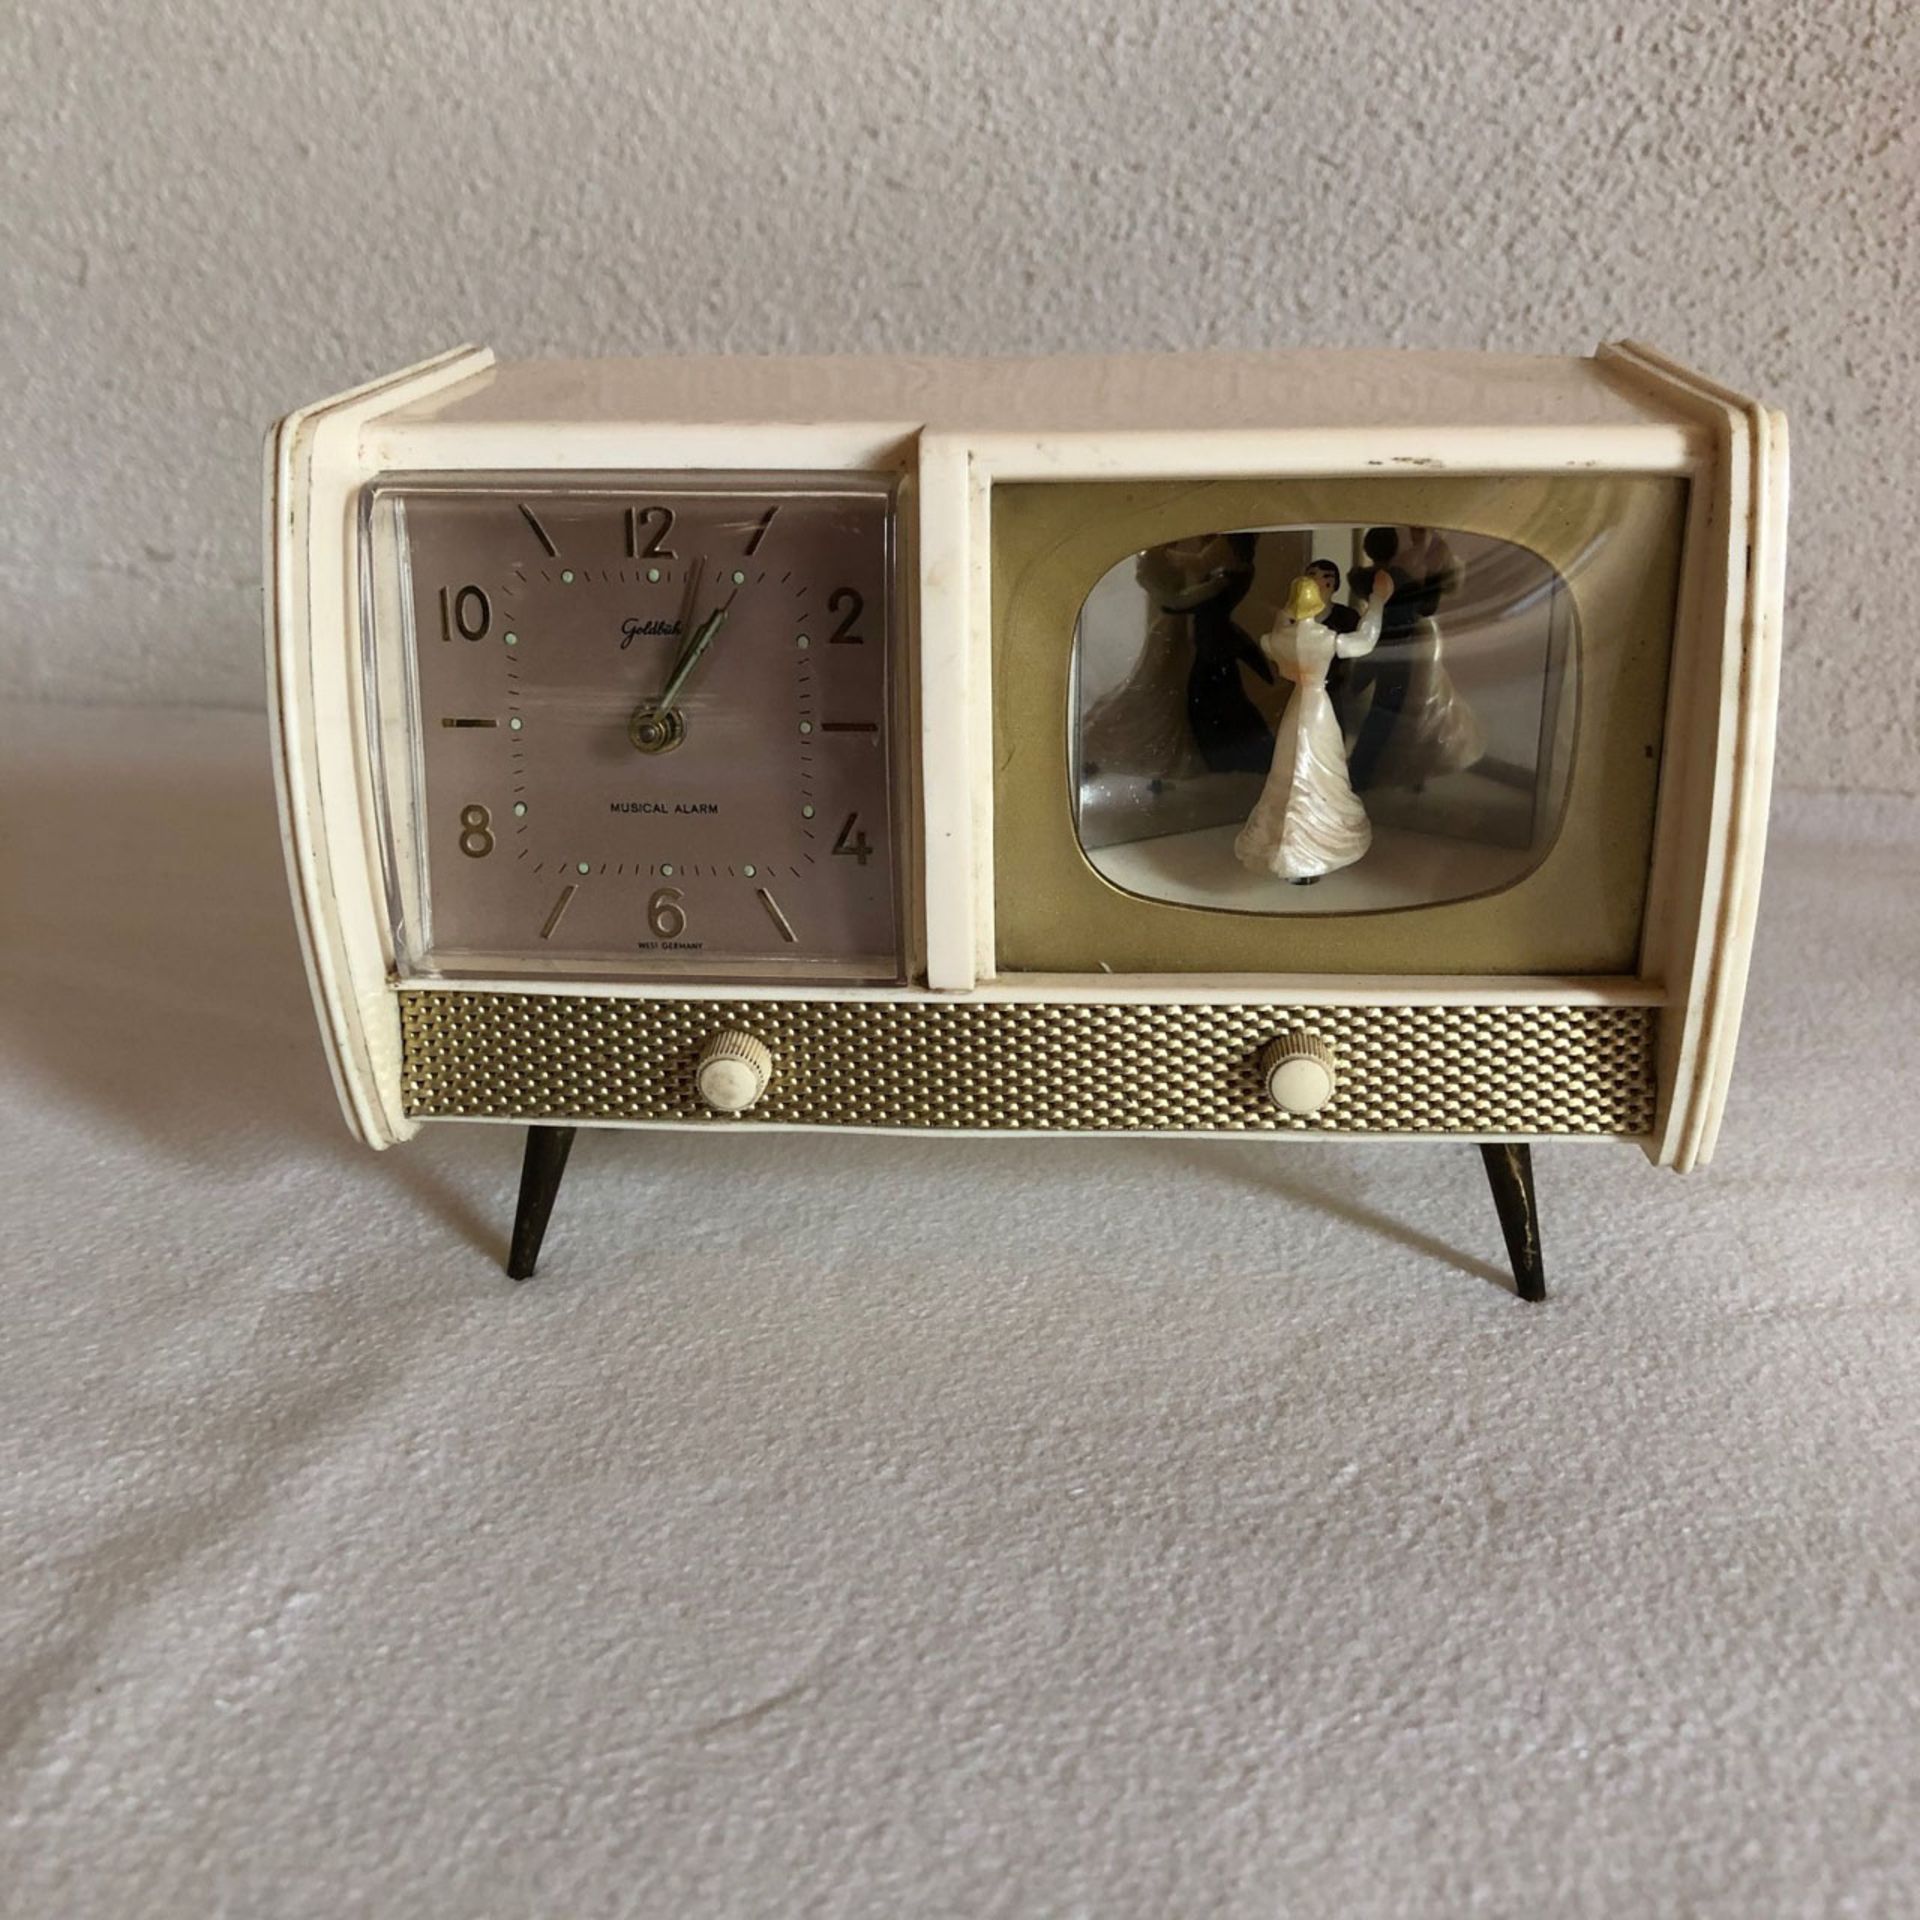 Radiowecker, 50er Jahre, tanzendes Hochzeitspaar, selten, funktionsfähig, gemarktet, 10 x 15 cm